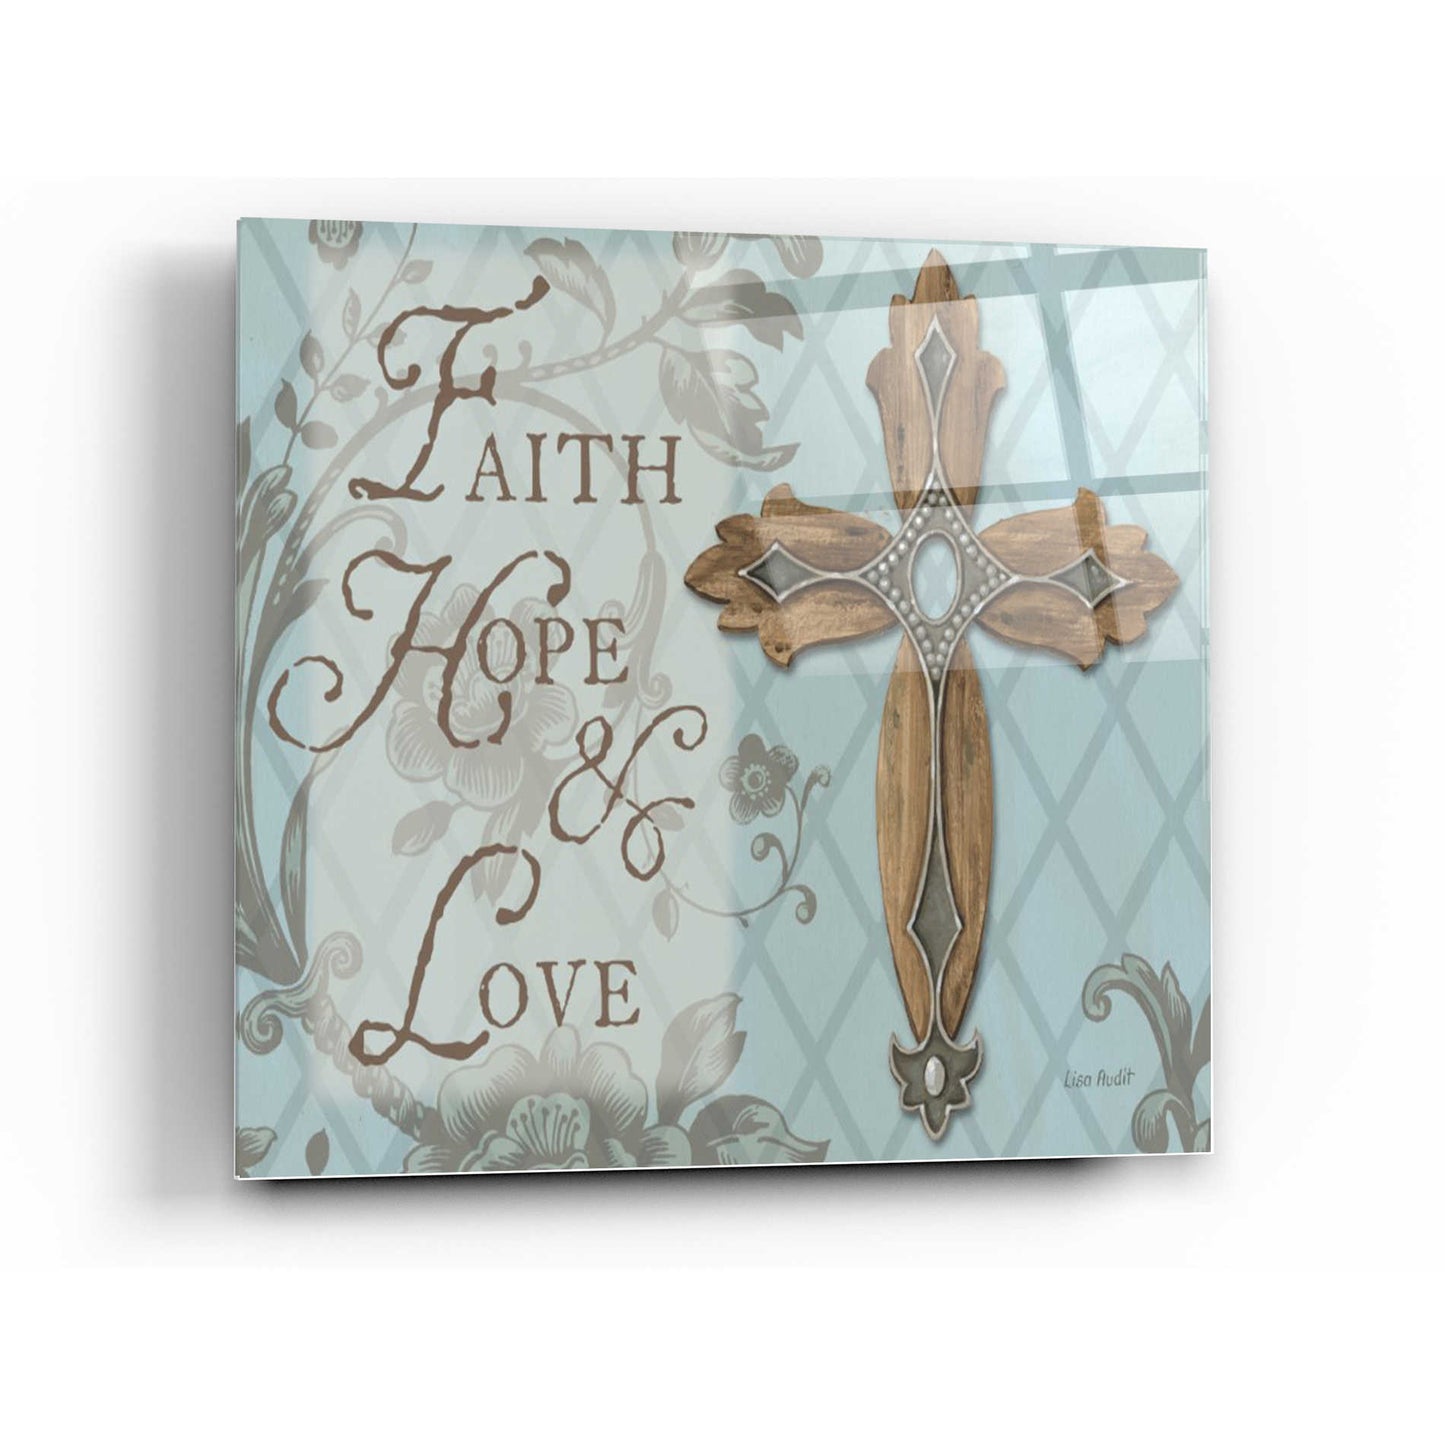 Epic Art 'Faith Hope Love' by Lisa Audit, Acrylic Glass Wall Art,12x12